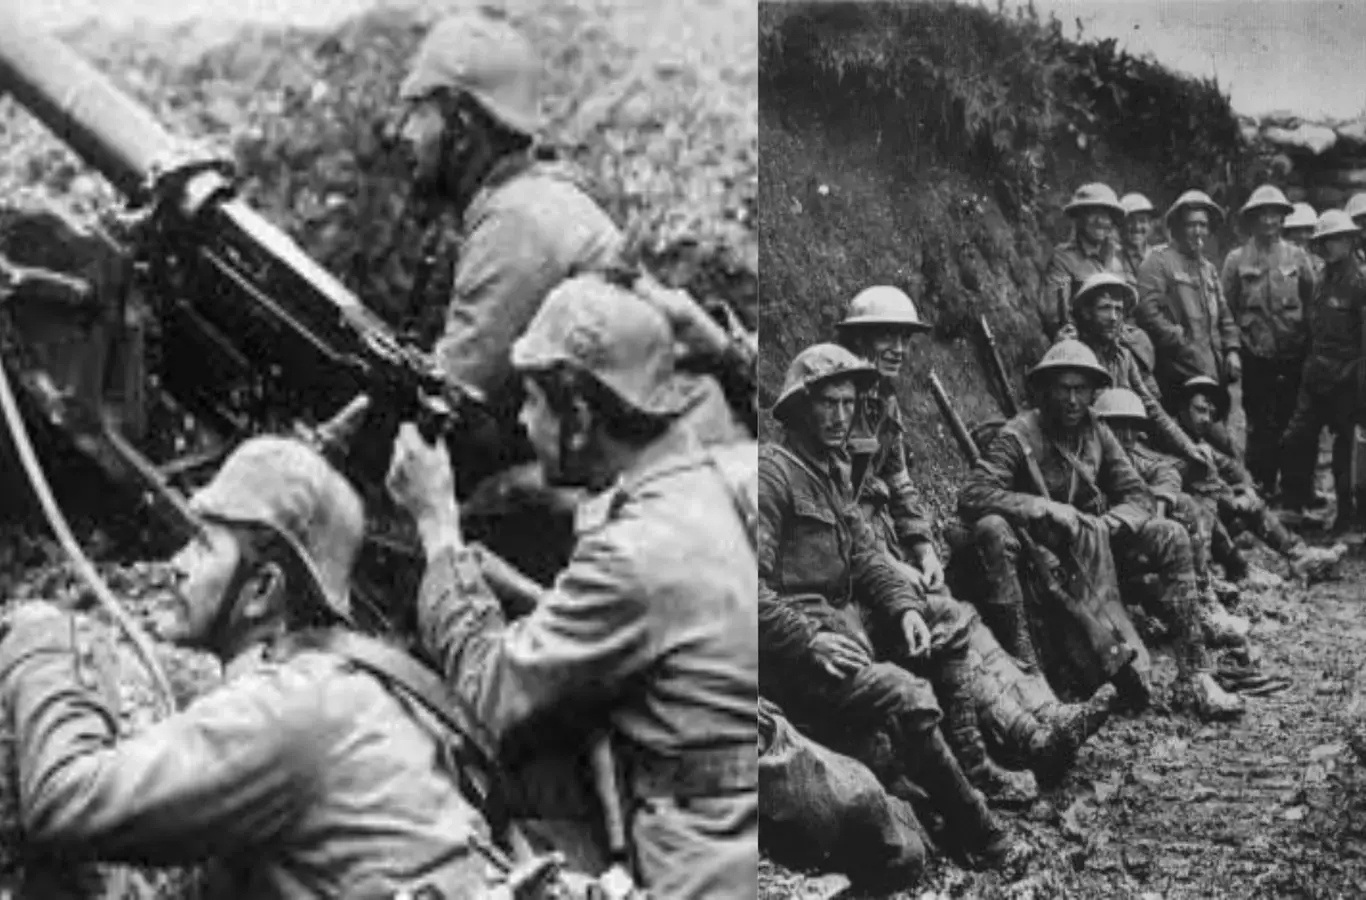 imagens de guerra para ilustrar texto sobre questões da primeira guerra mundial